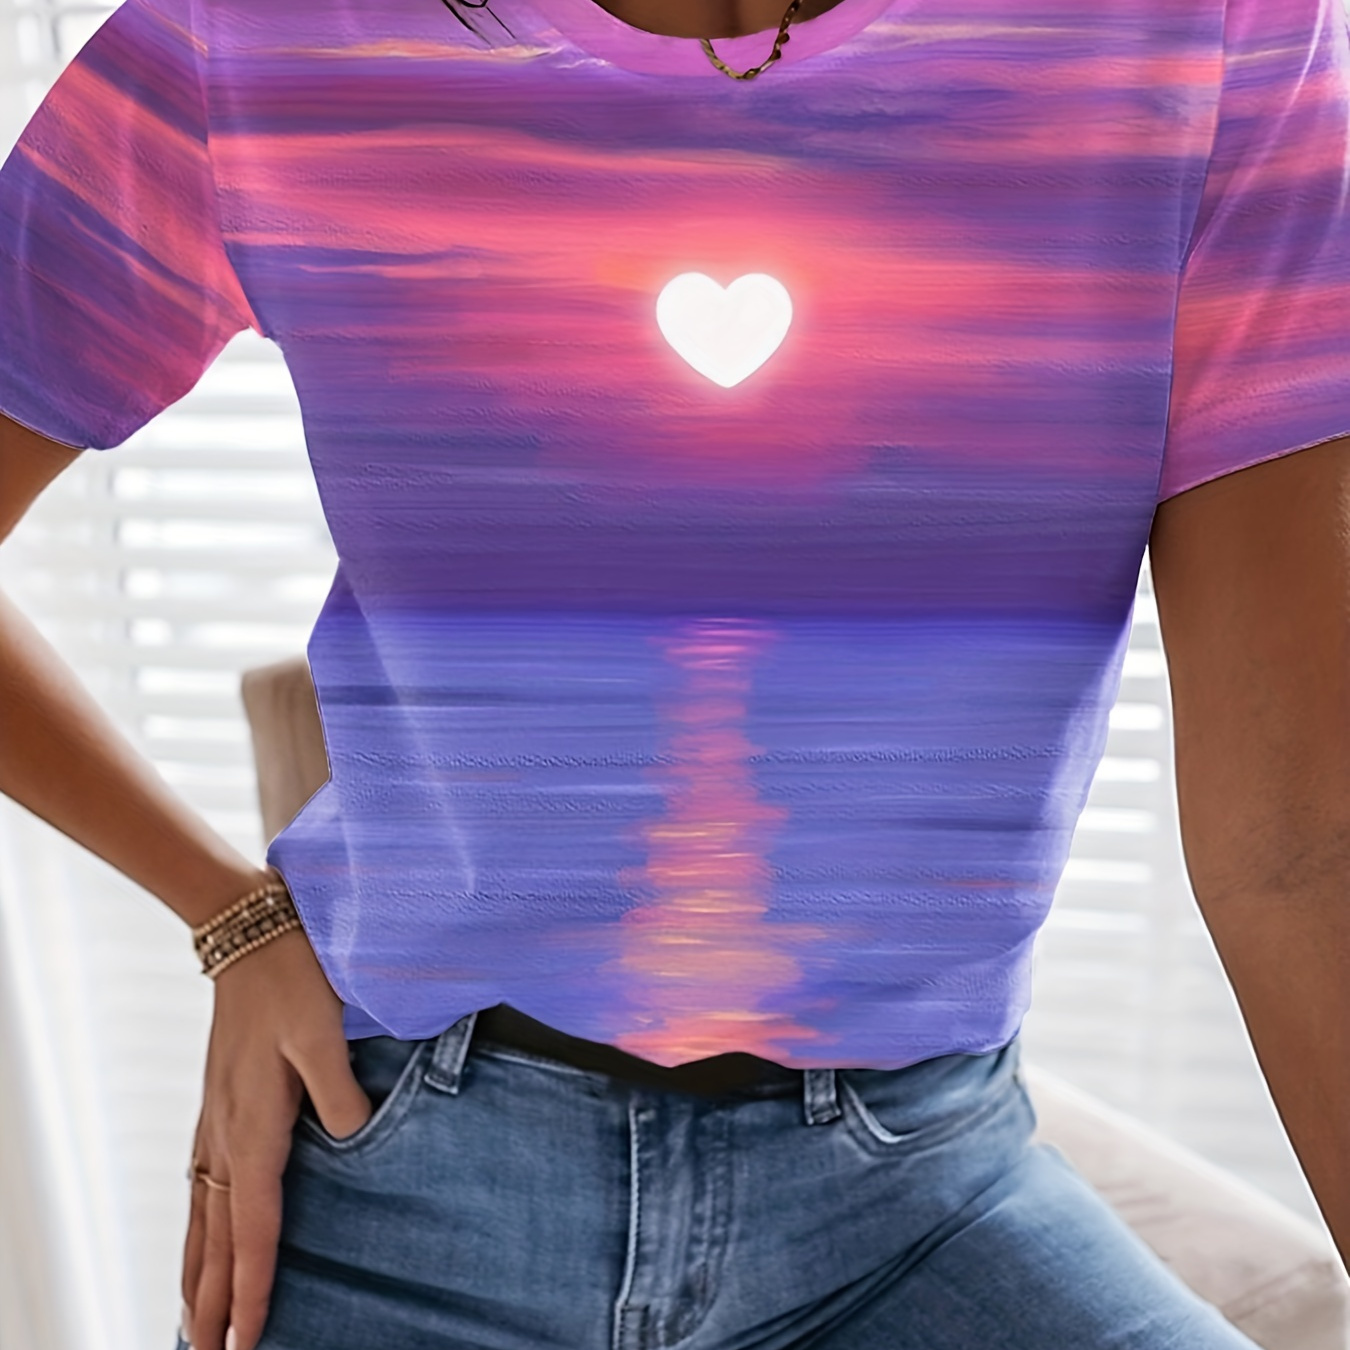 

T-shirt Imprimé Coucher De Soleil, Haut Décontracté À Manches Courtes Et Col Rond Pour L'été Et Le Printemps, Vêtements Pour Femmes